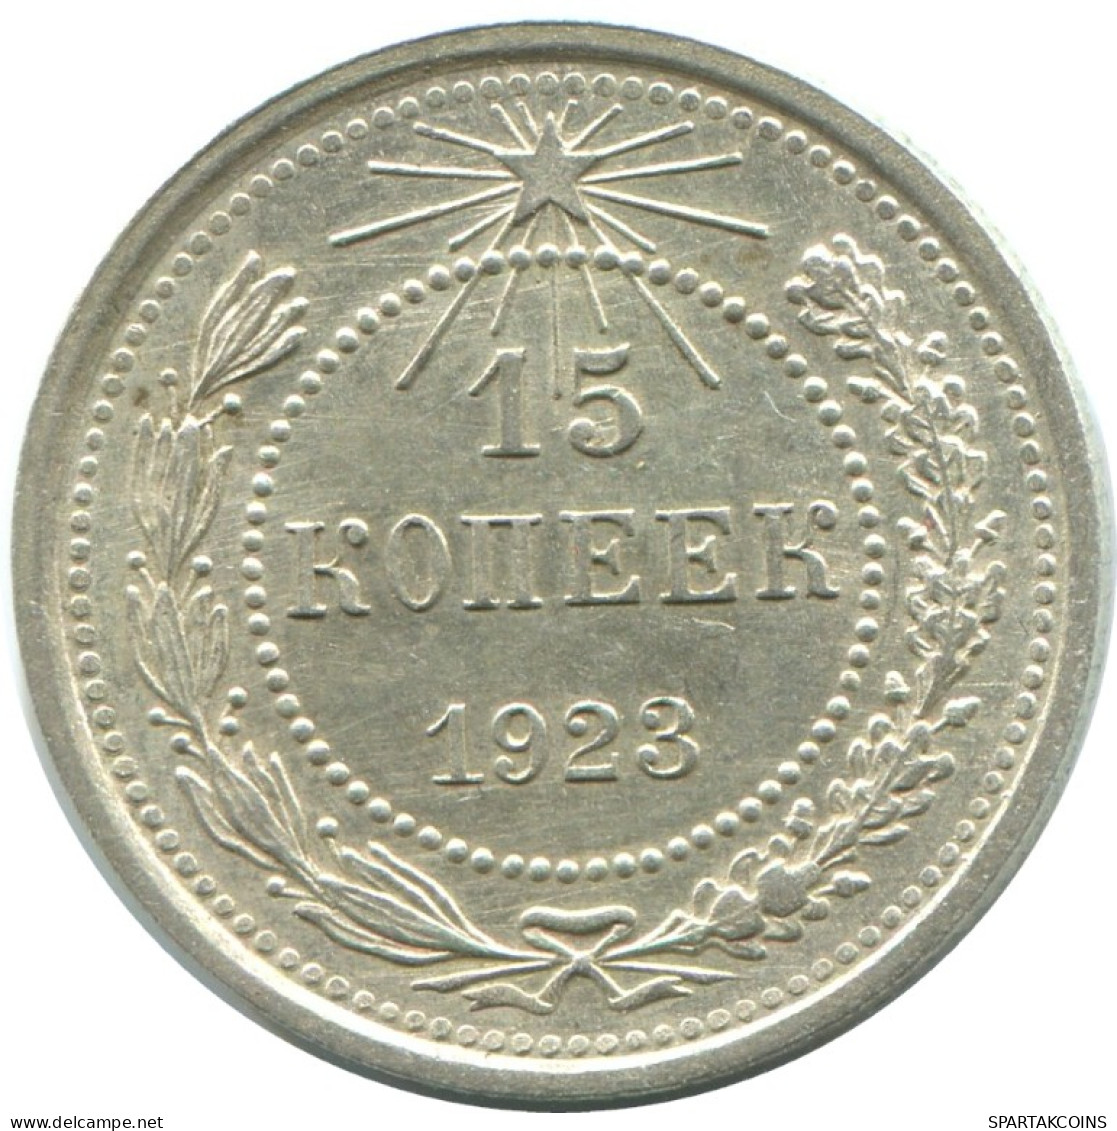 15 KOPEKS 1923 RUSIA RUSSIA RSFSR PLATA Moneda HIGH GRADE #AF113.4.E.A - Russland